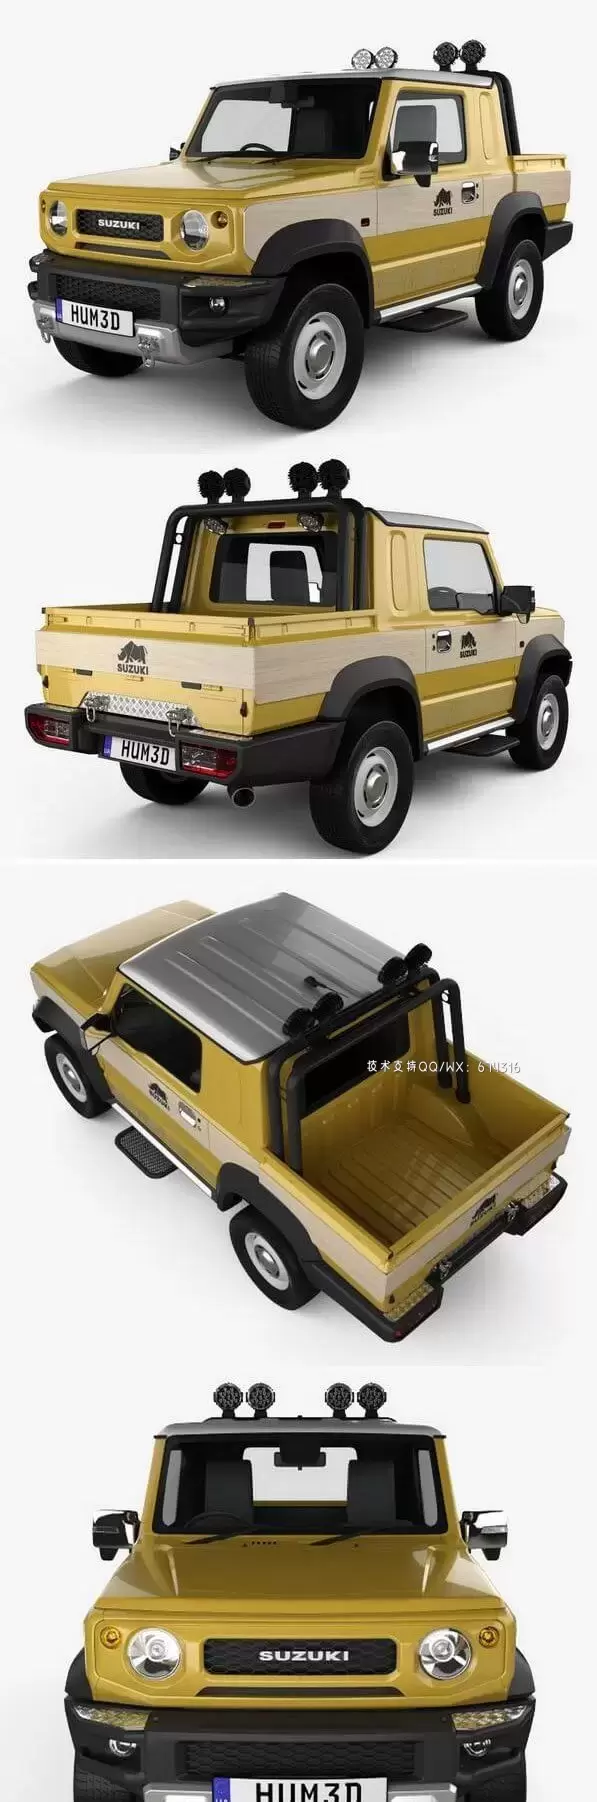 铃木 Jimny Sierra Pickup 2019 越野车汽车3D模型下载 (MAX,3DS,FBX,OBJ,C4D,LWO,TEX)免费下载